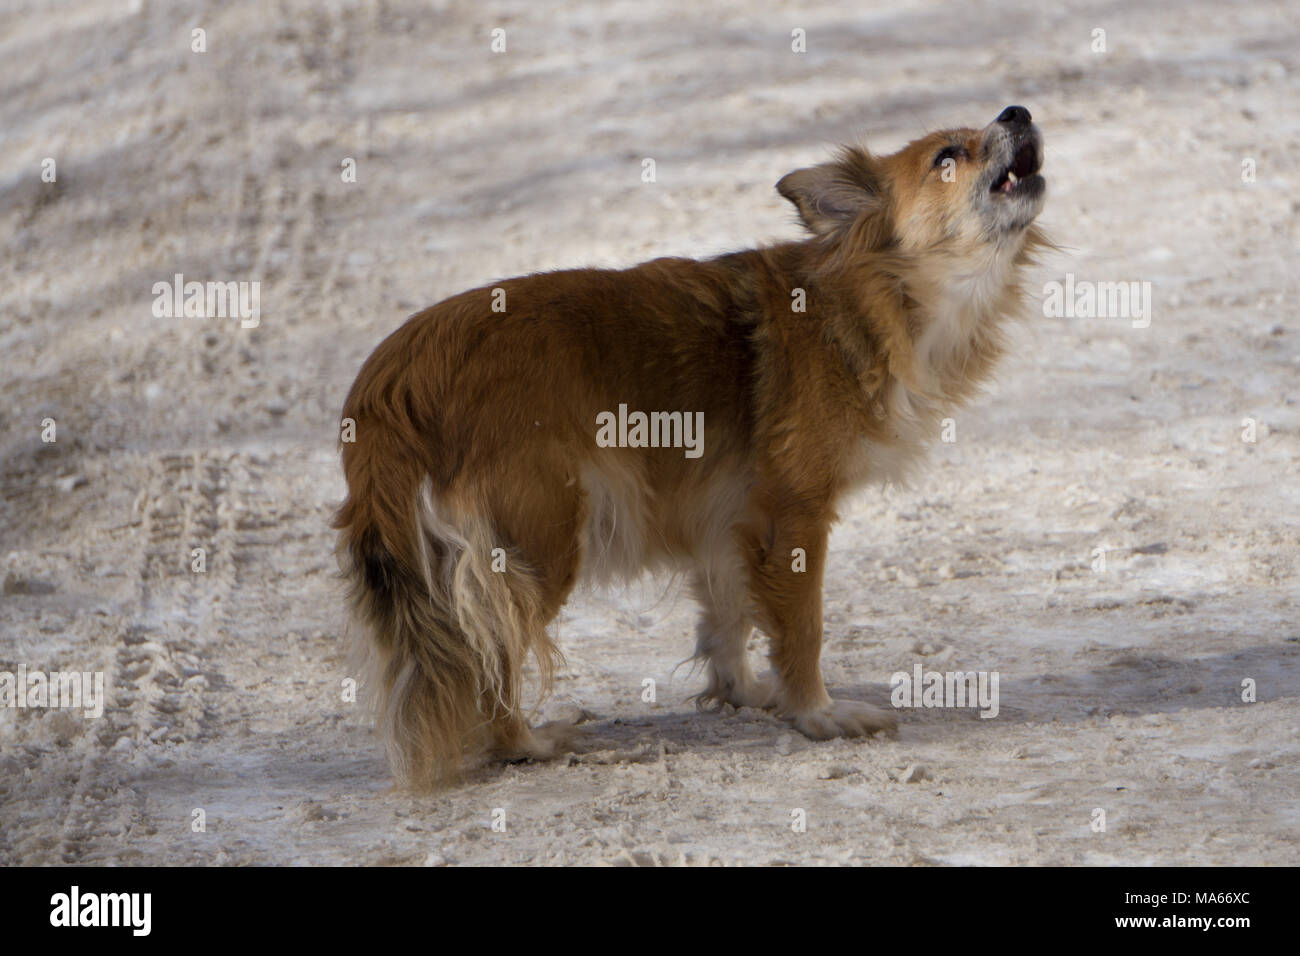 Alter kleiner Hund bellt in einem ländlichen Hof Stockfotografie - Alamy